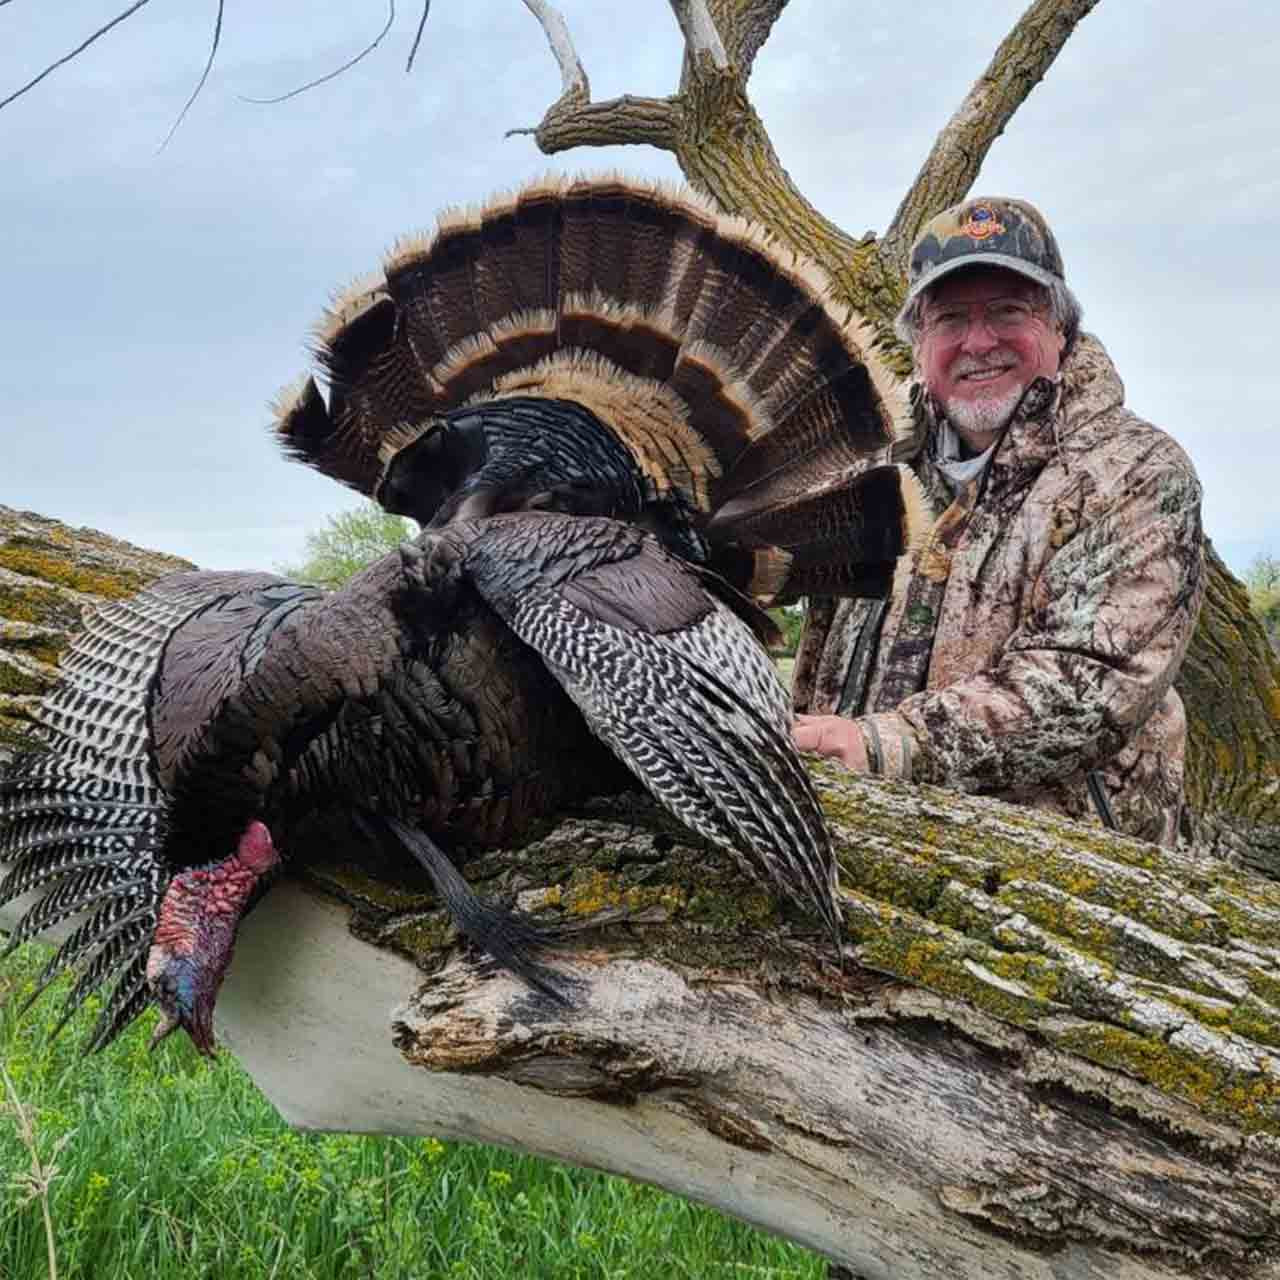 Turkey hunt in Nebraska at Prairie King Ranch